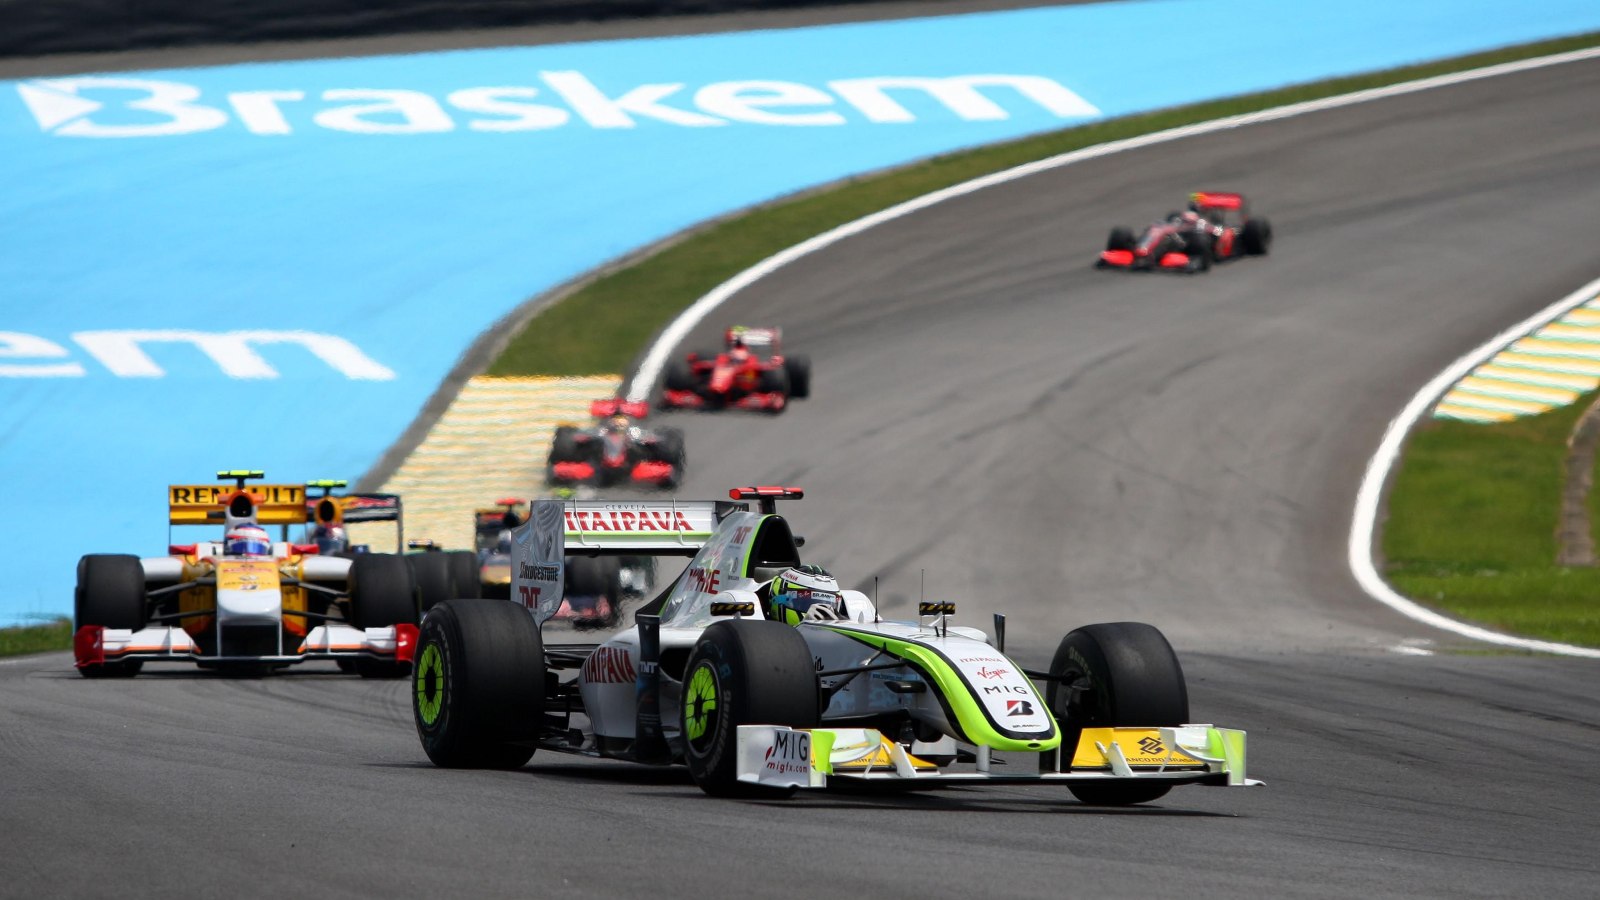 2009 Brazilian Grand Prix, 18th October 2009